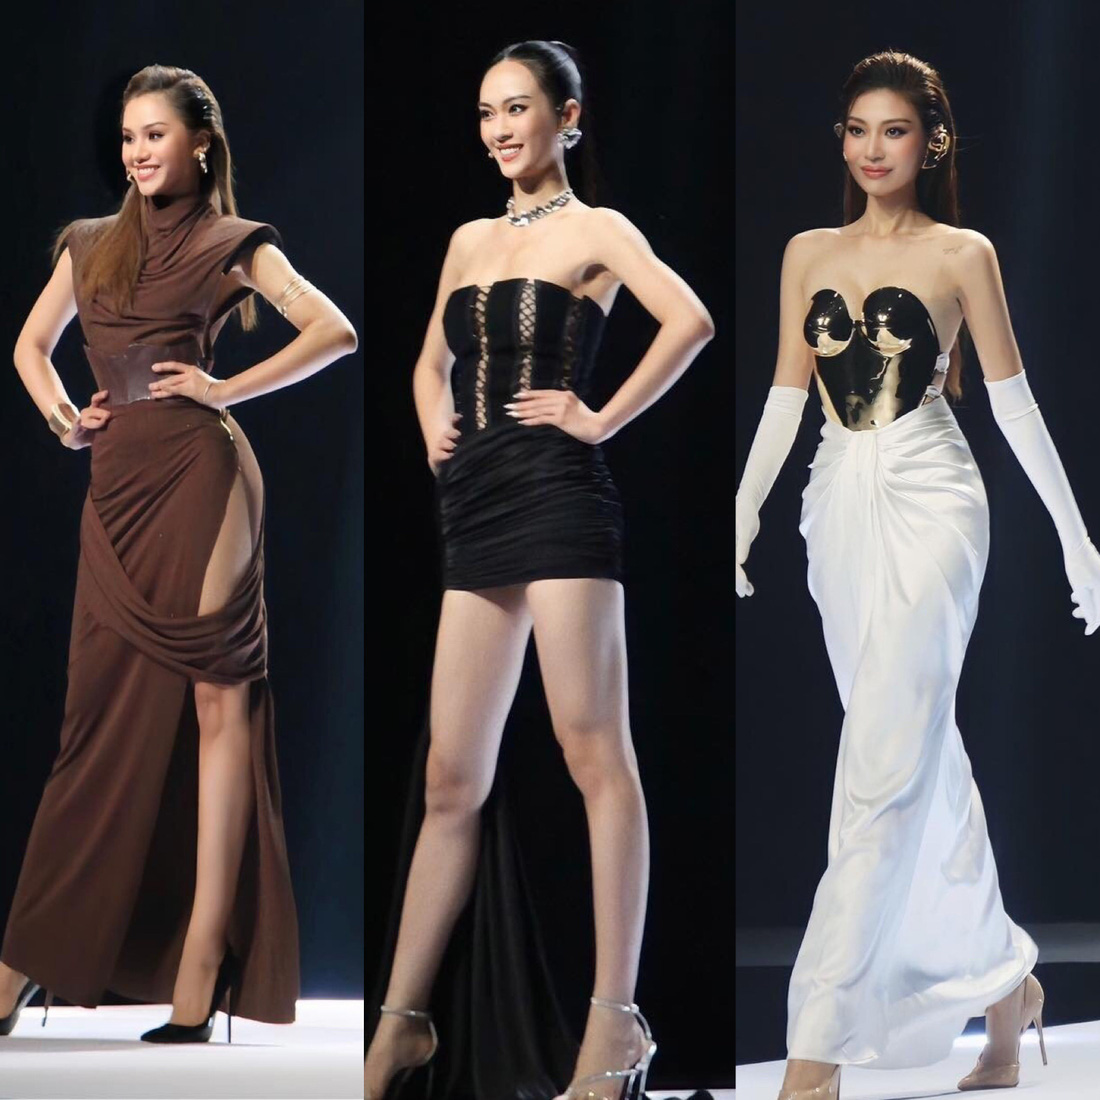 Từ trái qua: Người mẫu Lê Thu Trang, Vũ Thúy Quỳnh, Chúng Huyền Thanh tự tin trên sàn catwalk - Ảnh: BTC